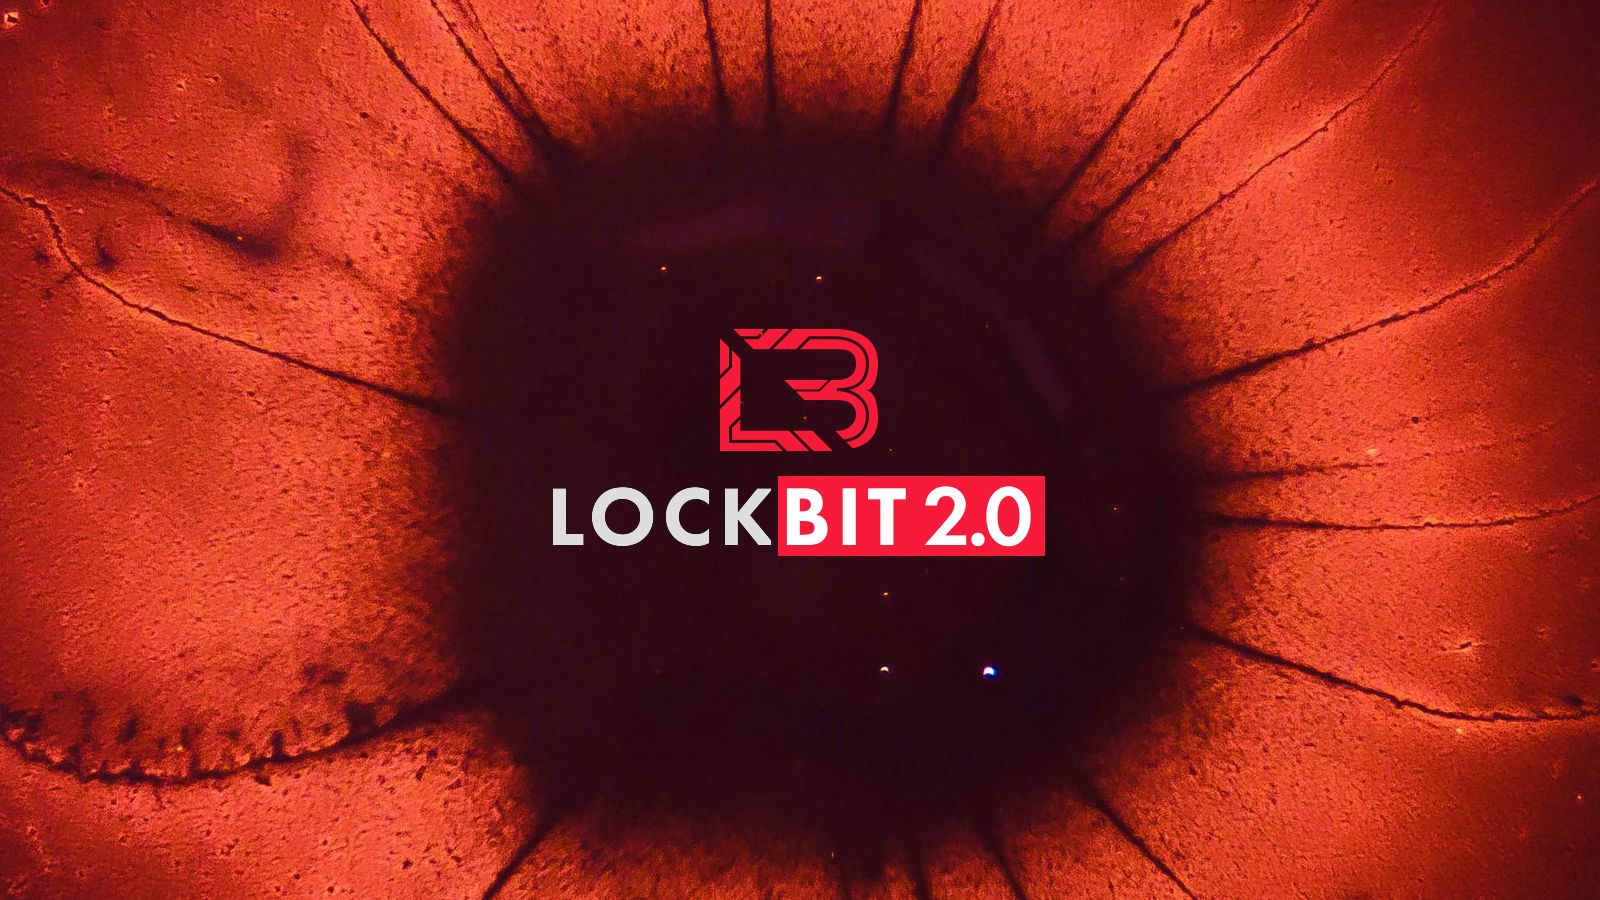 LockBit kurbanı, fidye yazılımı saldırısının maliyetinin 42 milyon dolar olduğunu tahmin ediyor